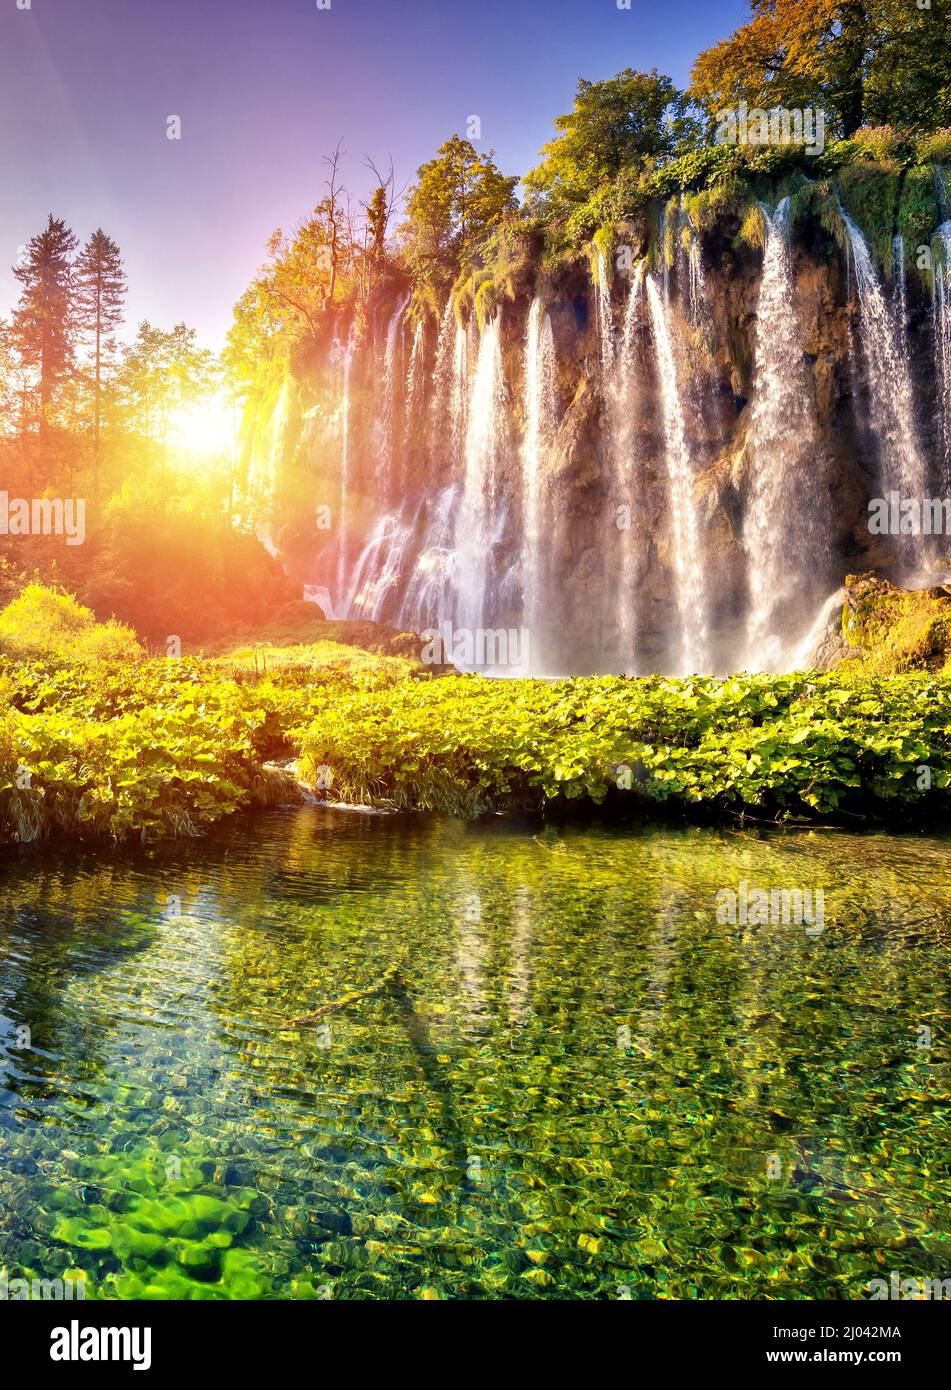 Majestätischer Blick auf den Wasserfall mit türkisfarbenem Wasser und sonnigen Balken im Nationalpark Plitvicer Seen. Der Wald leuchtet durch Sonnenlicht. Kroatien. Europa. Dramatisch Stockfoto